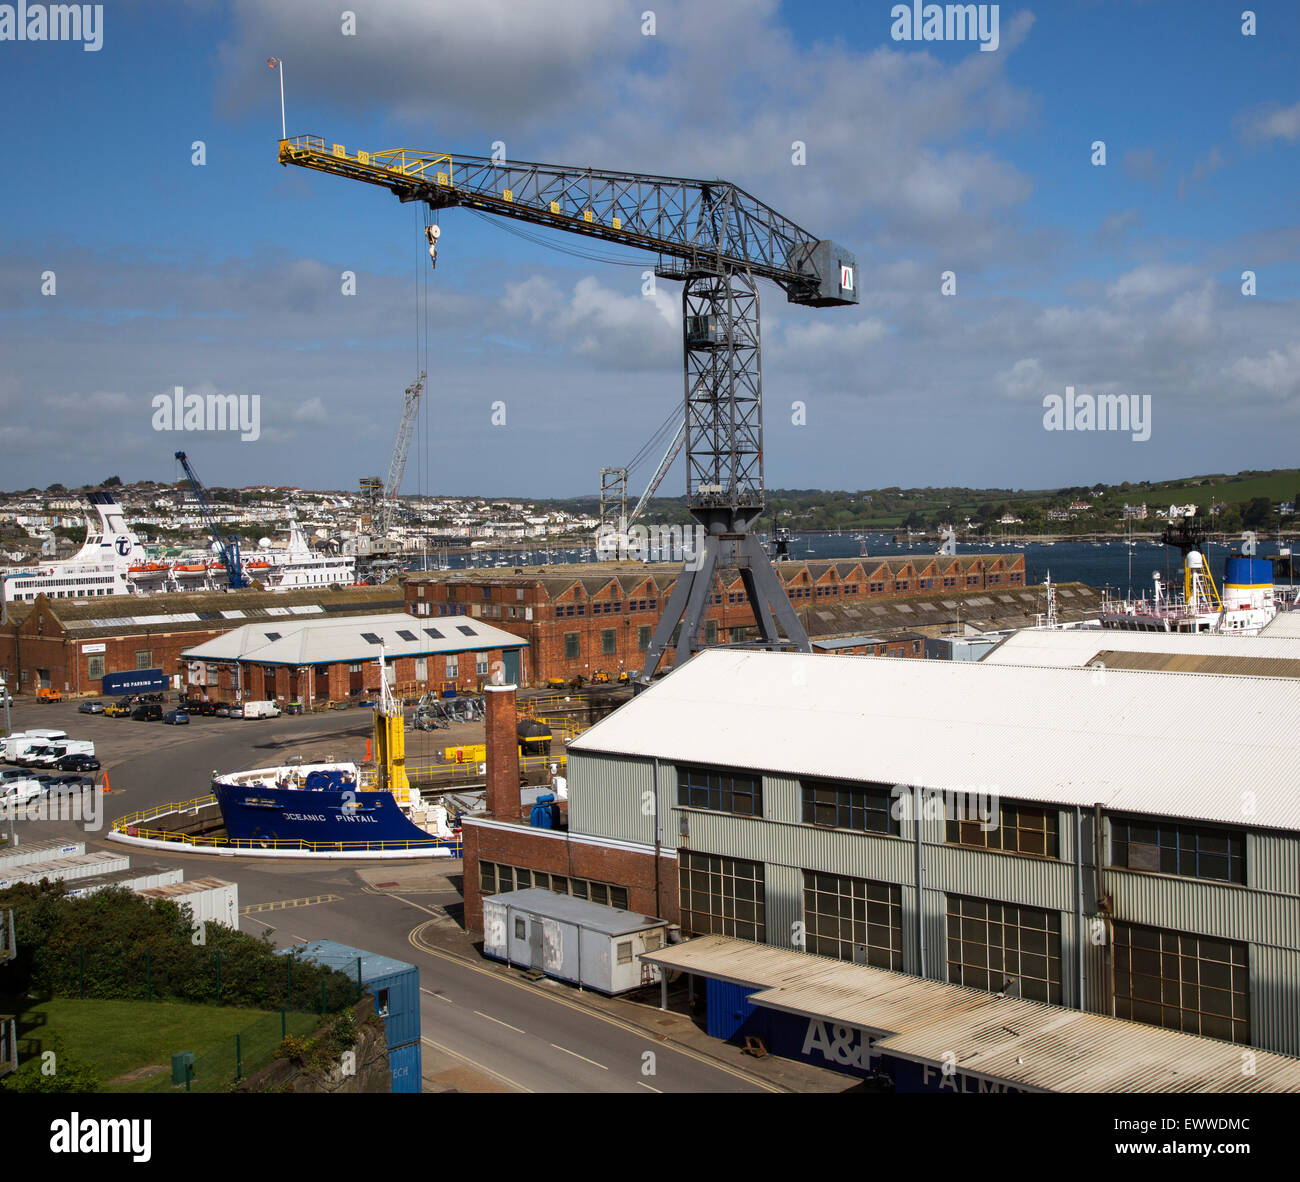 Port and docks at Falmouth, Cornwall, England, UK Stock Photo